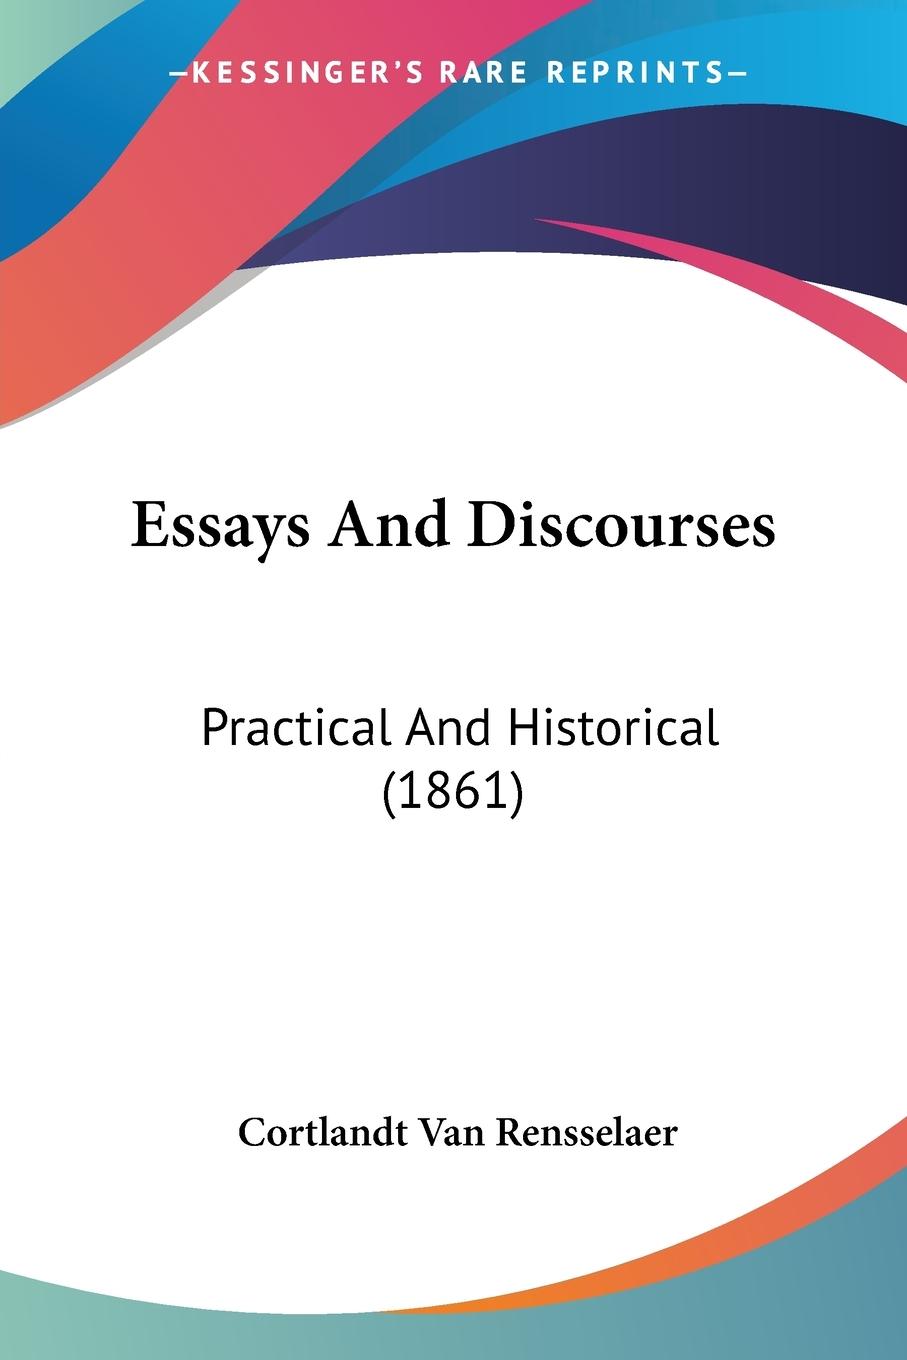 Essays And Discourses - Rensselaer, Cortlandt Van